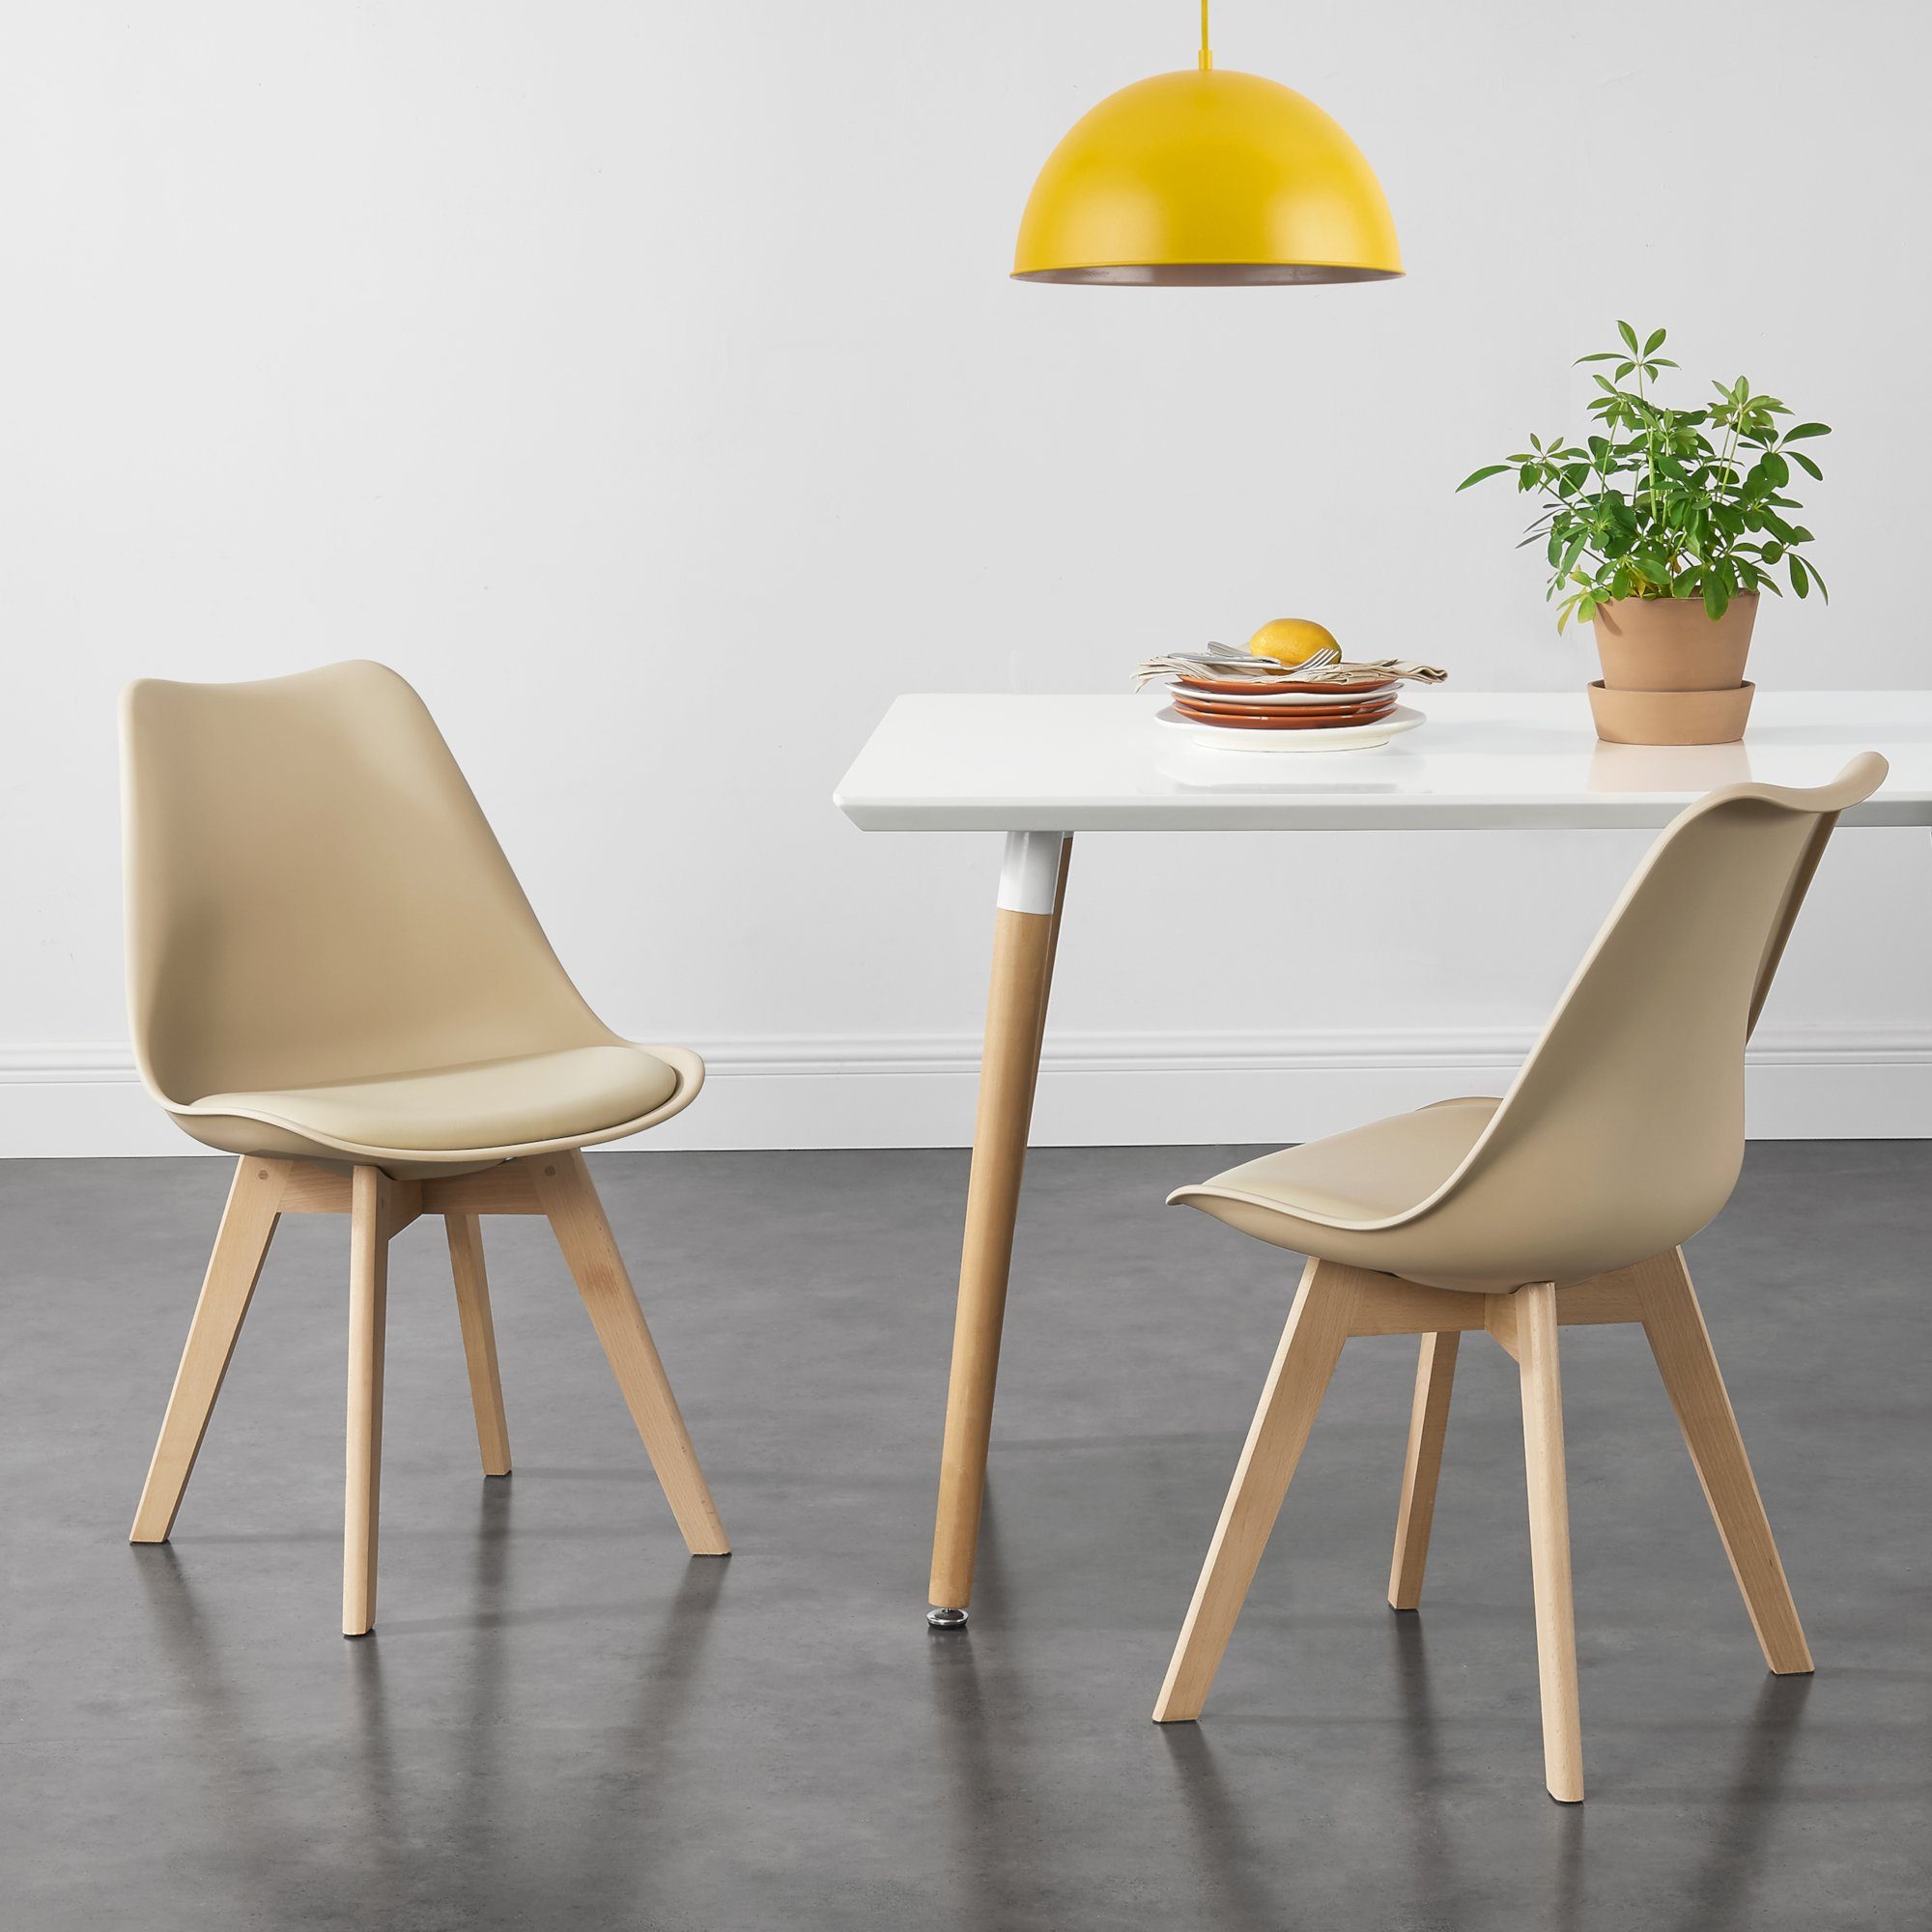 6x Design Stühle Schwarz Esszimmer Stuhl Kunststoff Skandinavisch Set en.casa 